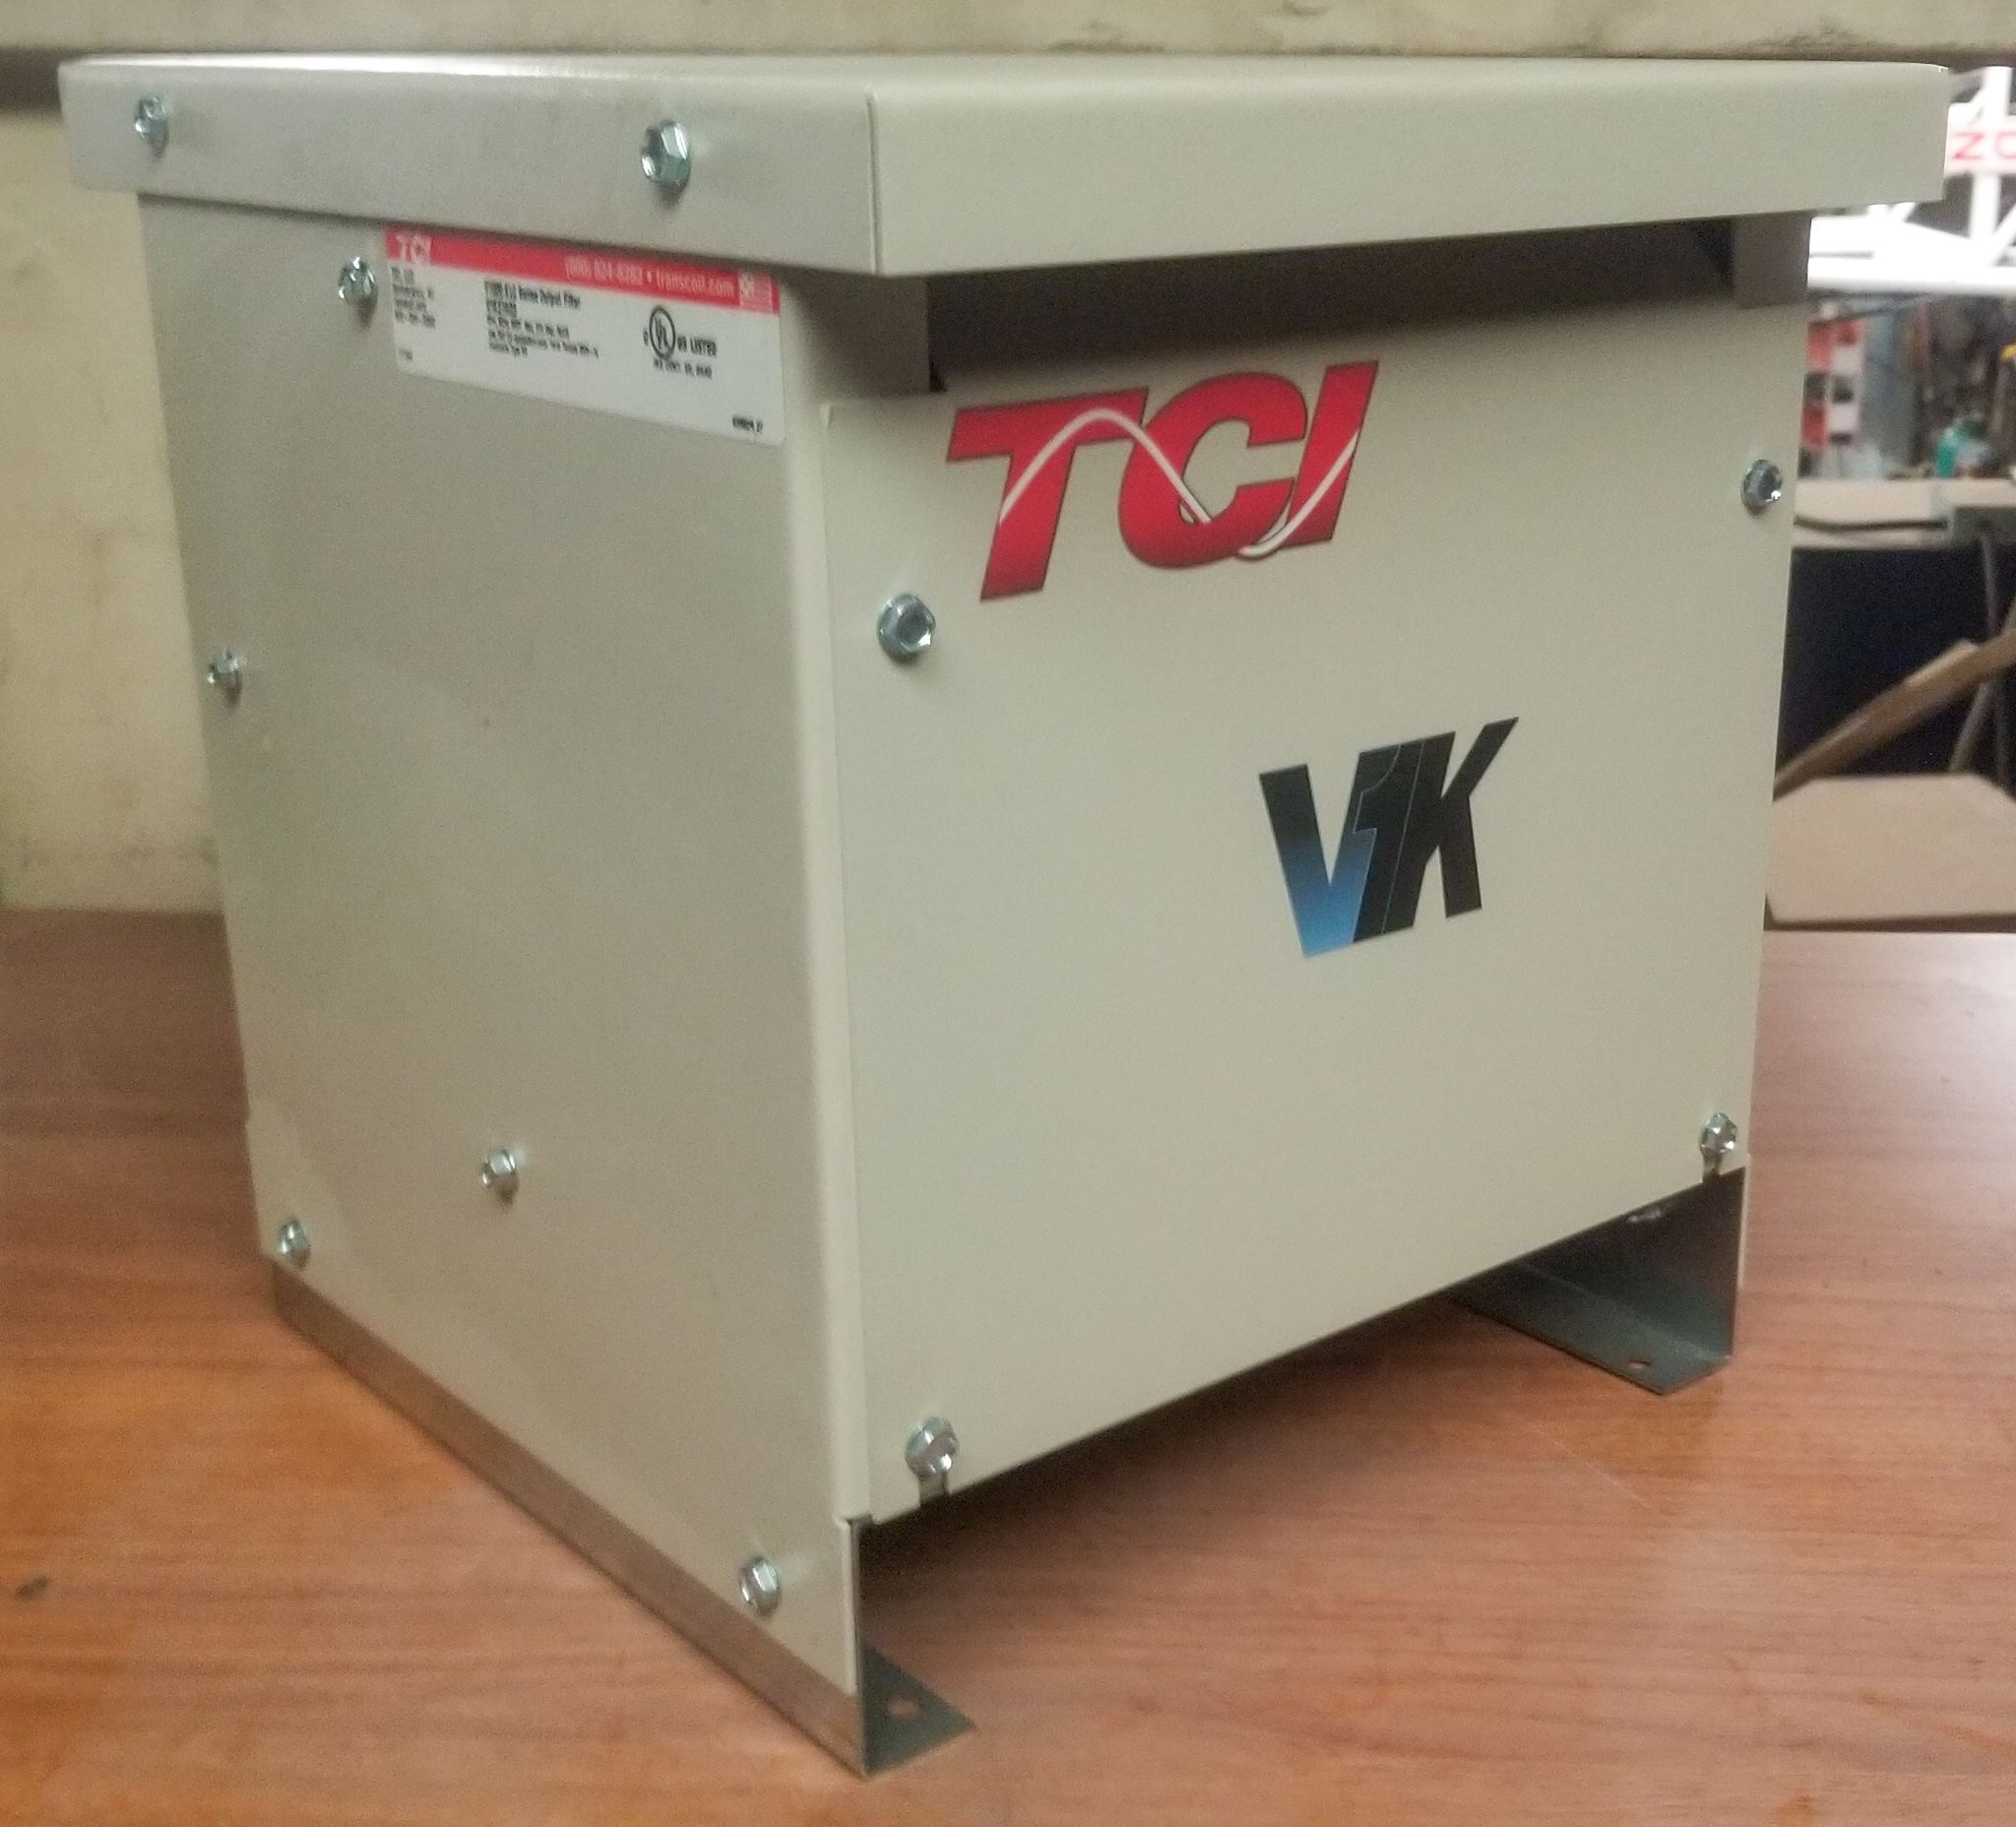 TCI V1K27A03 V1K, 600V max, 27A, 3 Phase, Type 3R, dV/dT Output Filter